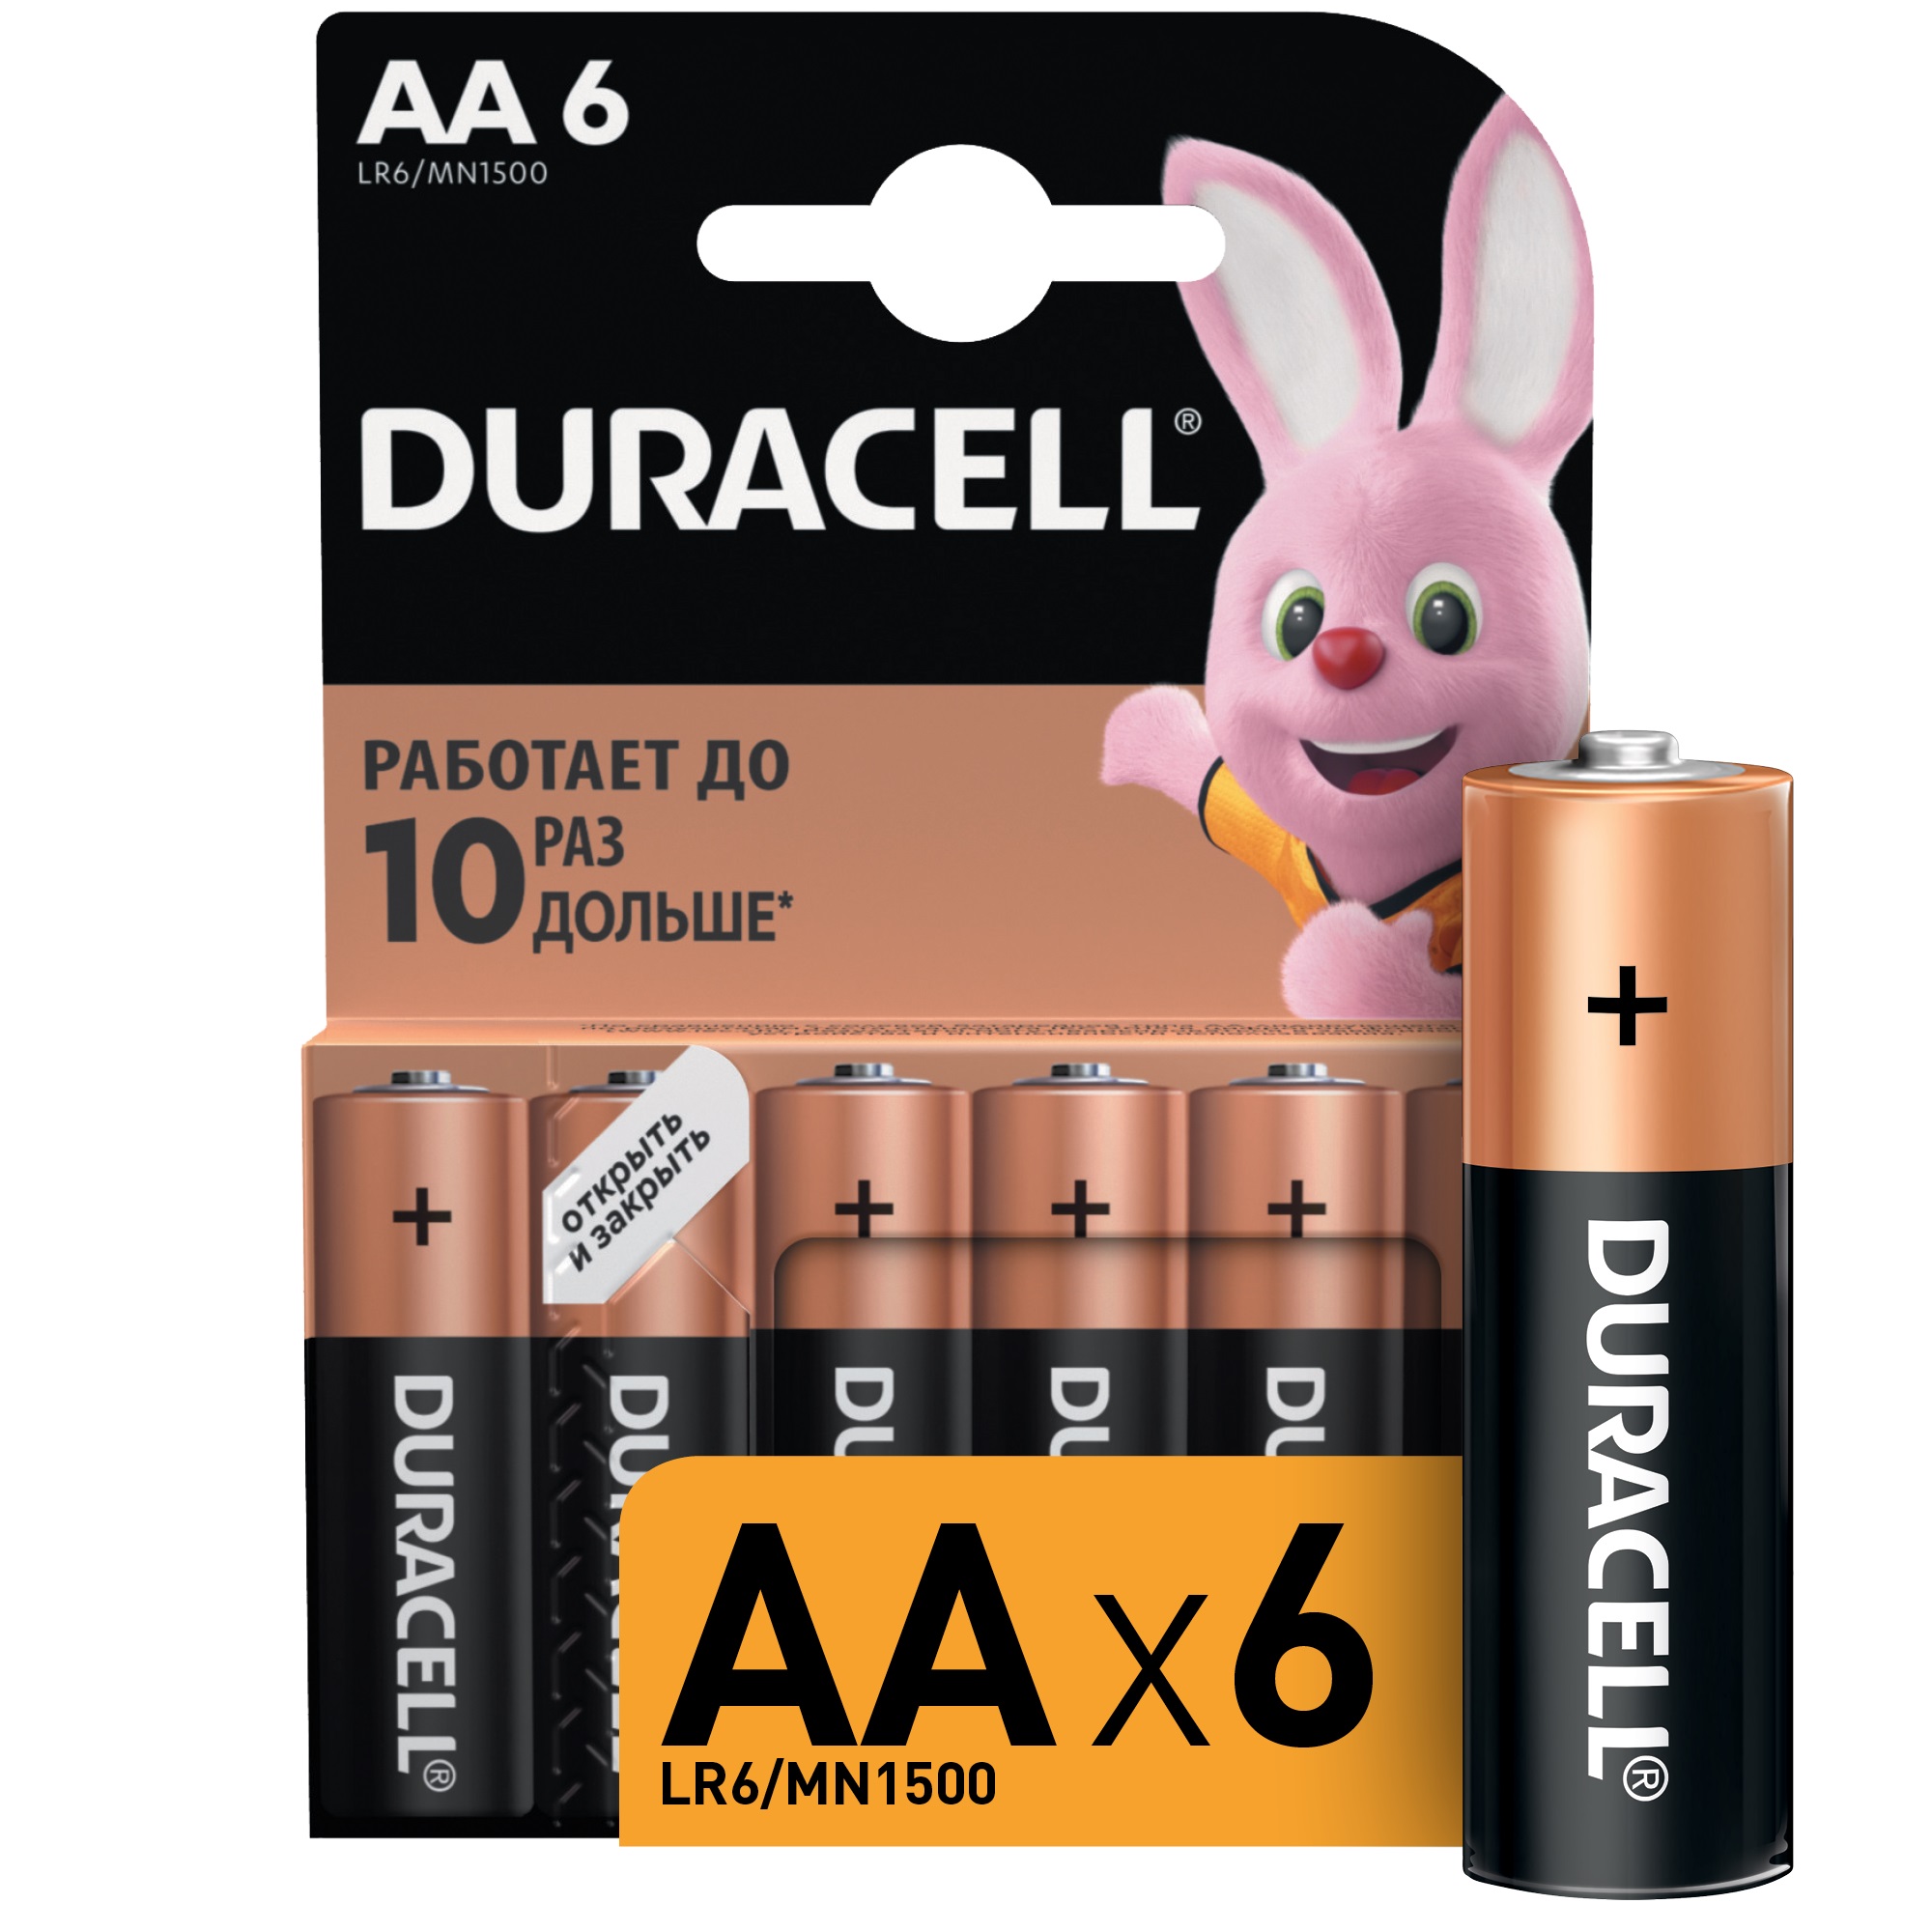 Батарейки Duracell АА 1,5В 6 шт батарейки duracell lr6 2bl basic аа 2шт